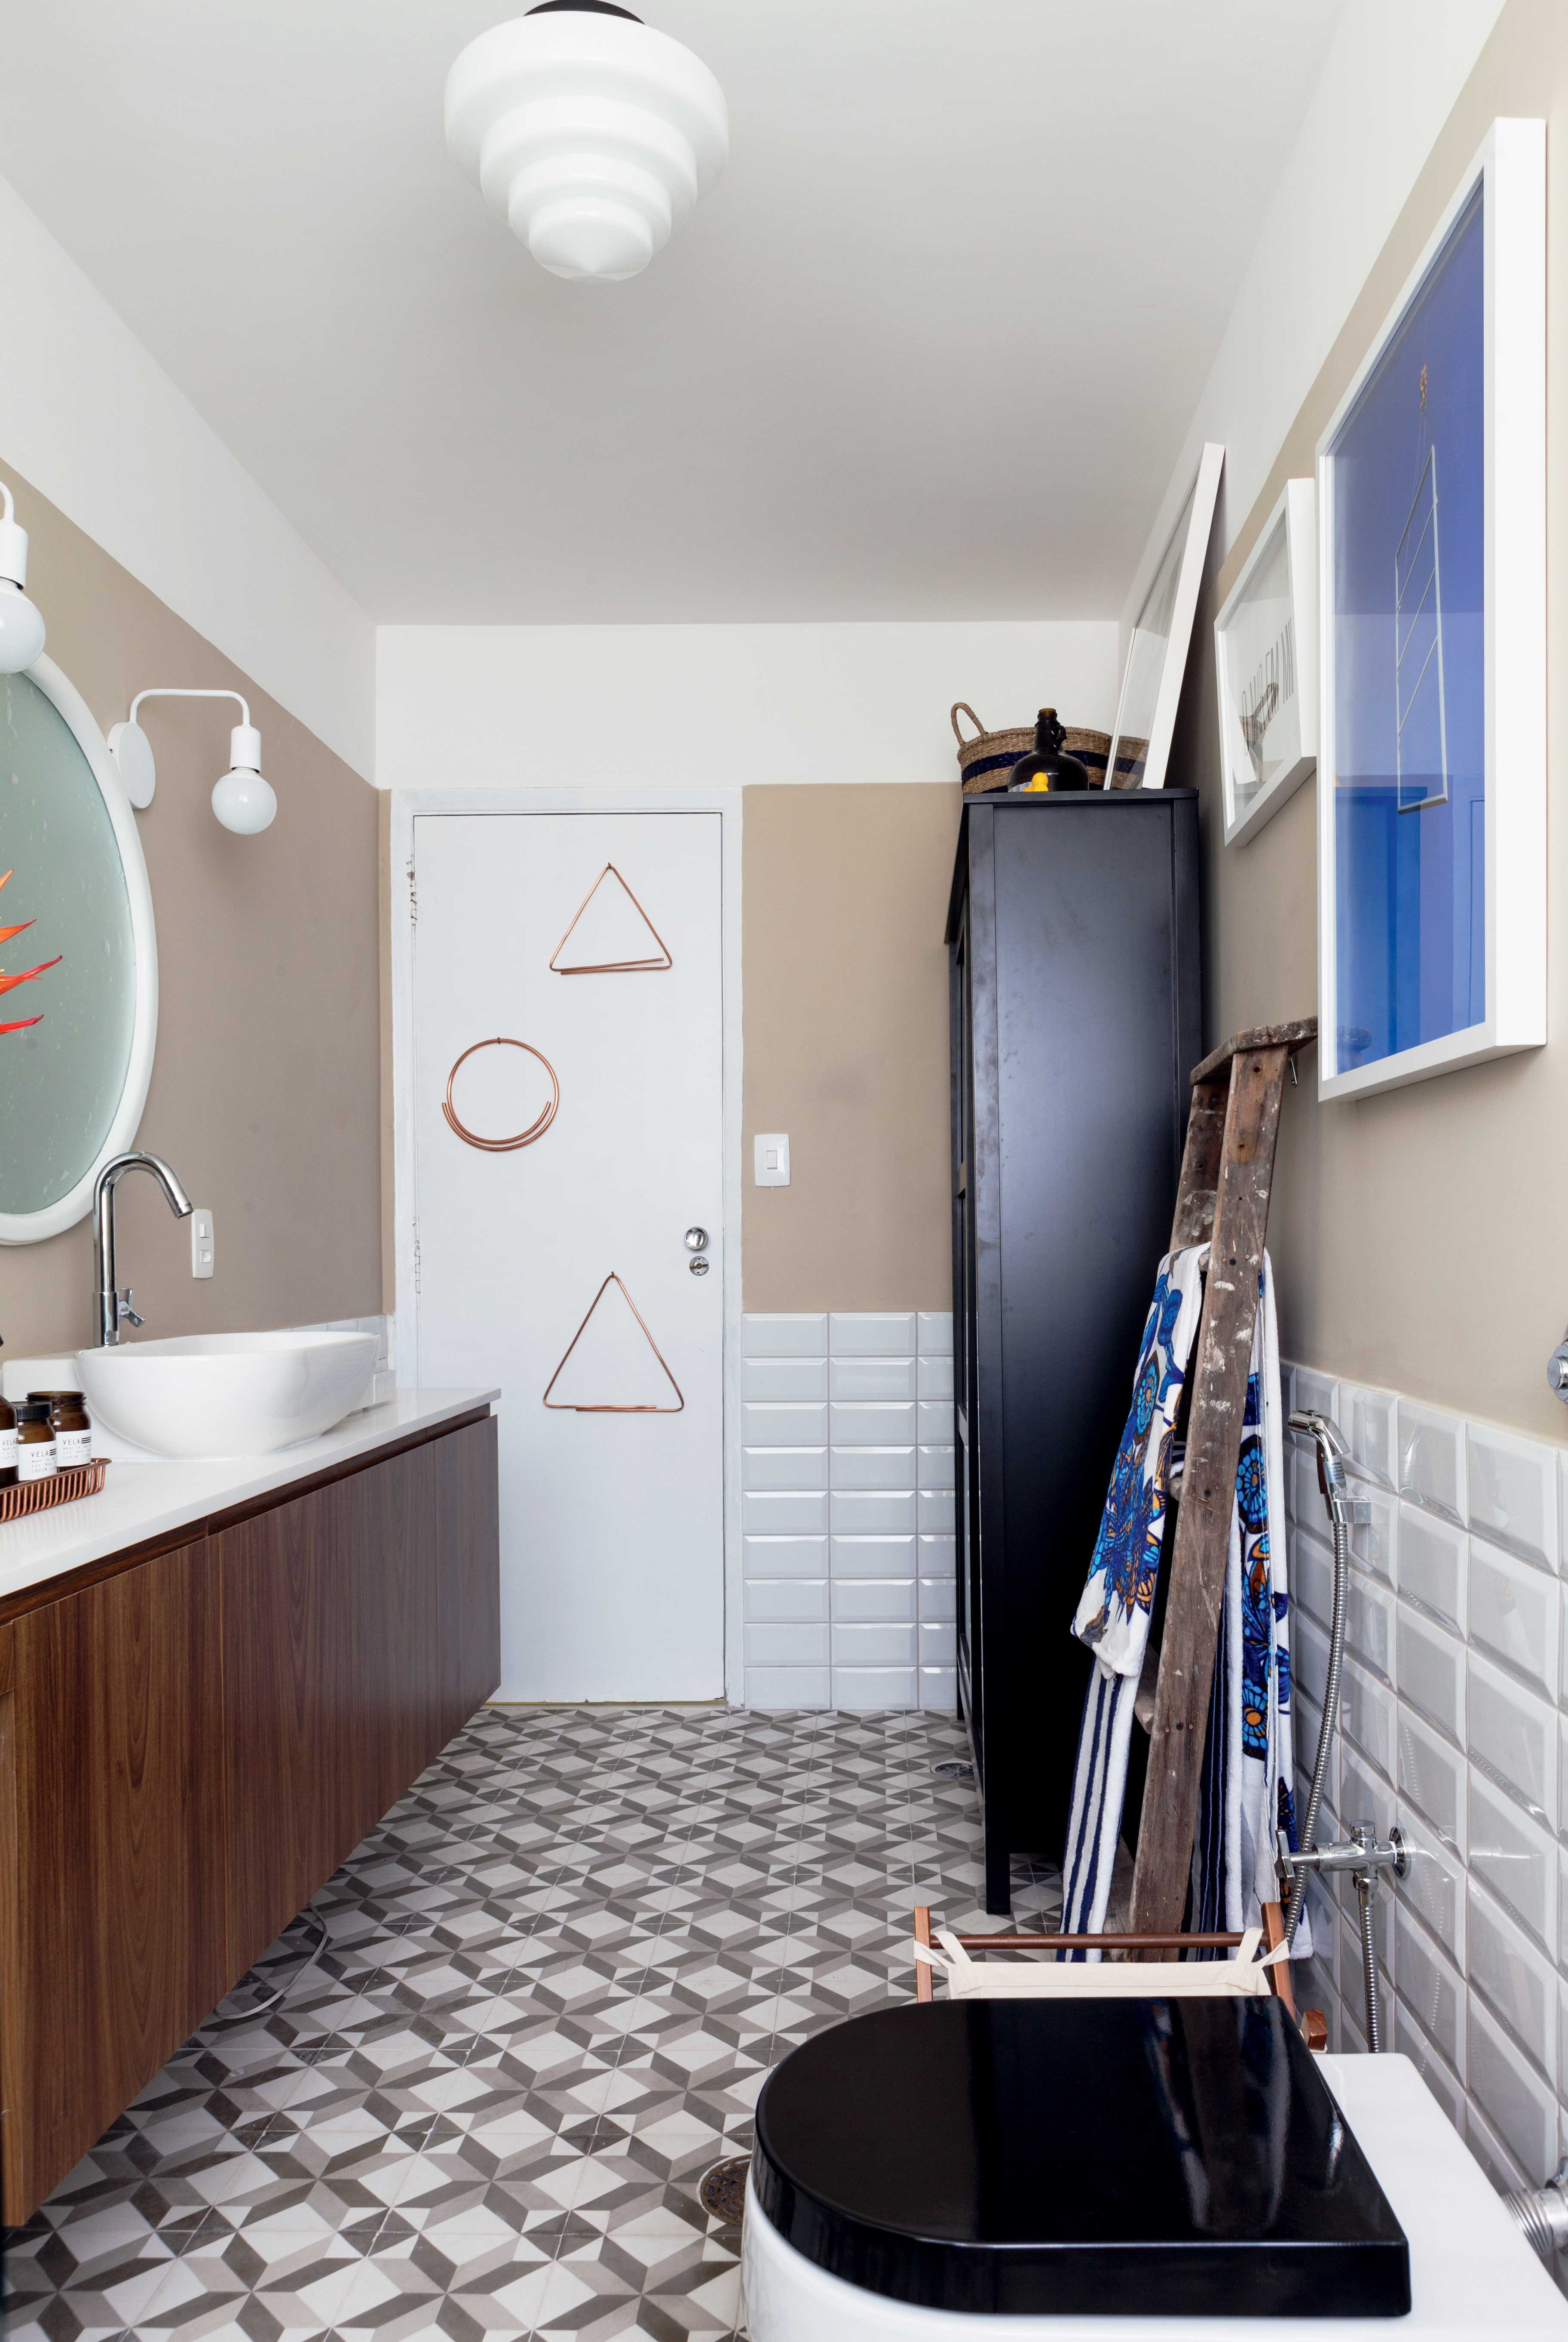 4 ideias do 'Decora' para deixar a decoração do banheiro impecável (Foto: Lufe Gomes e André Klotz)